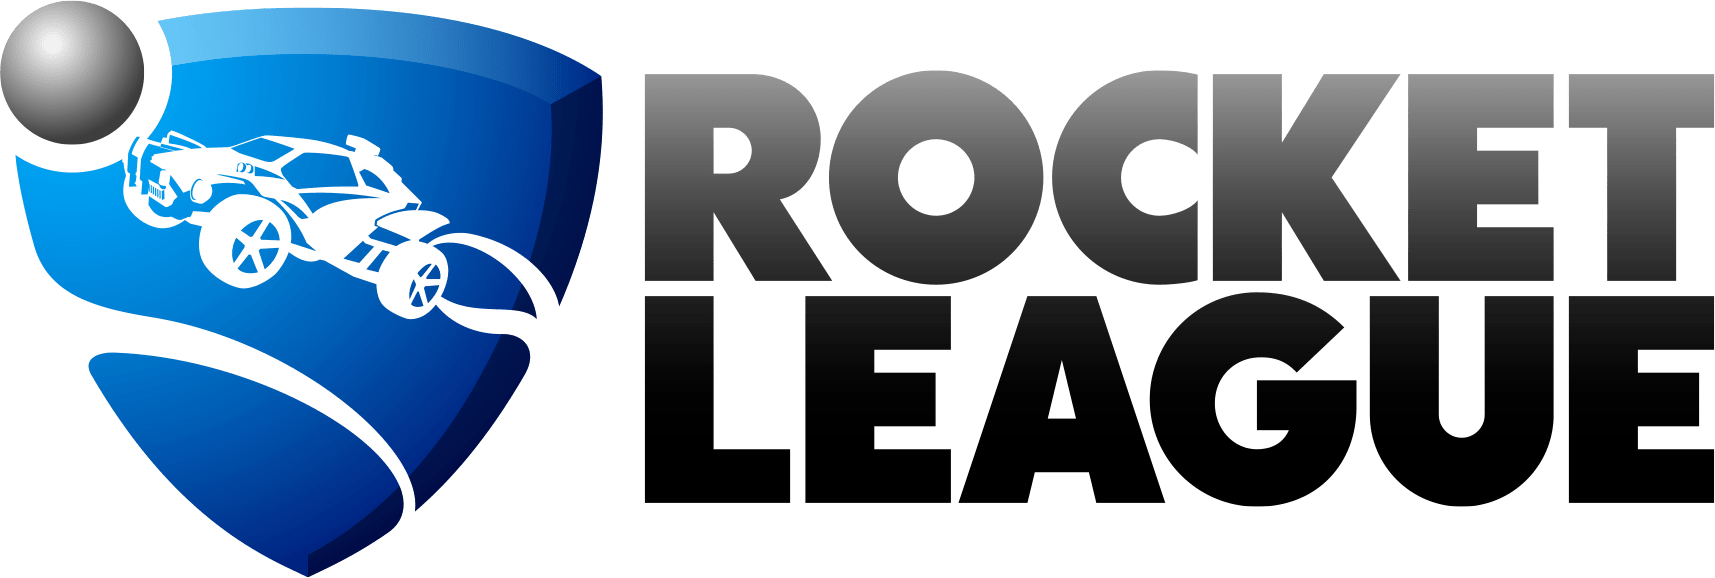 Rocket-League-logo-HZ-on-White